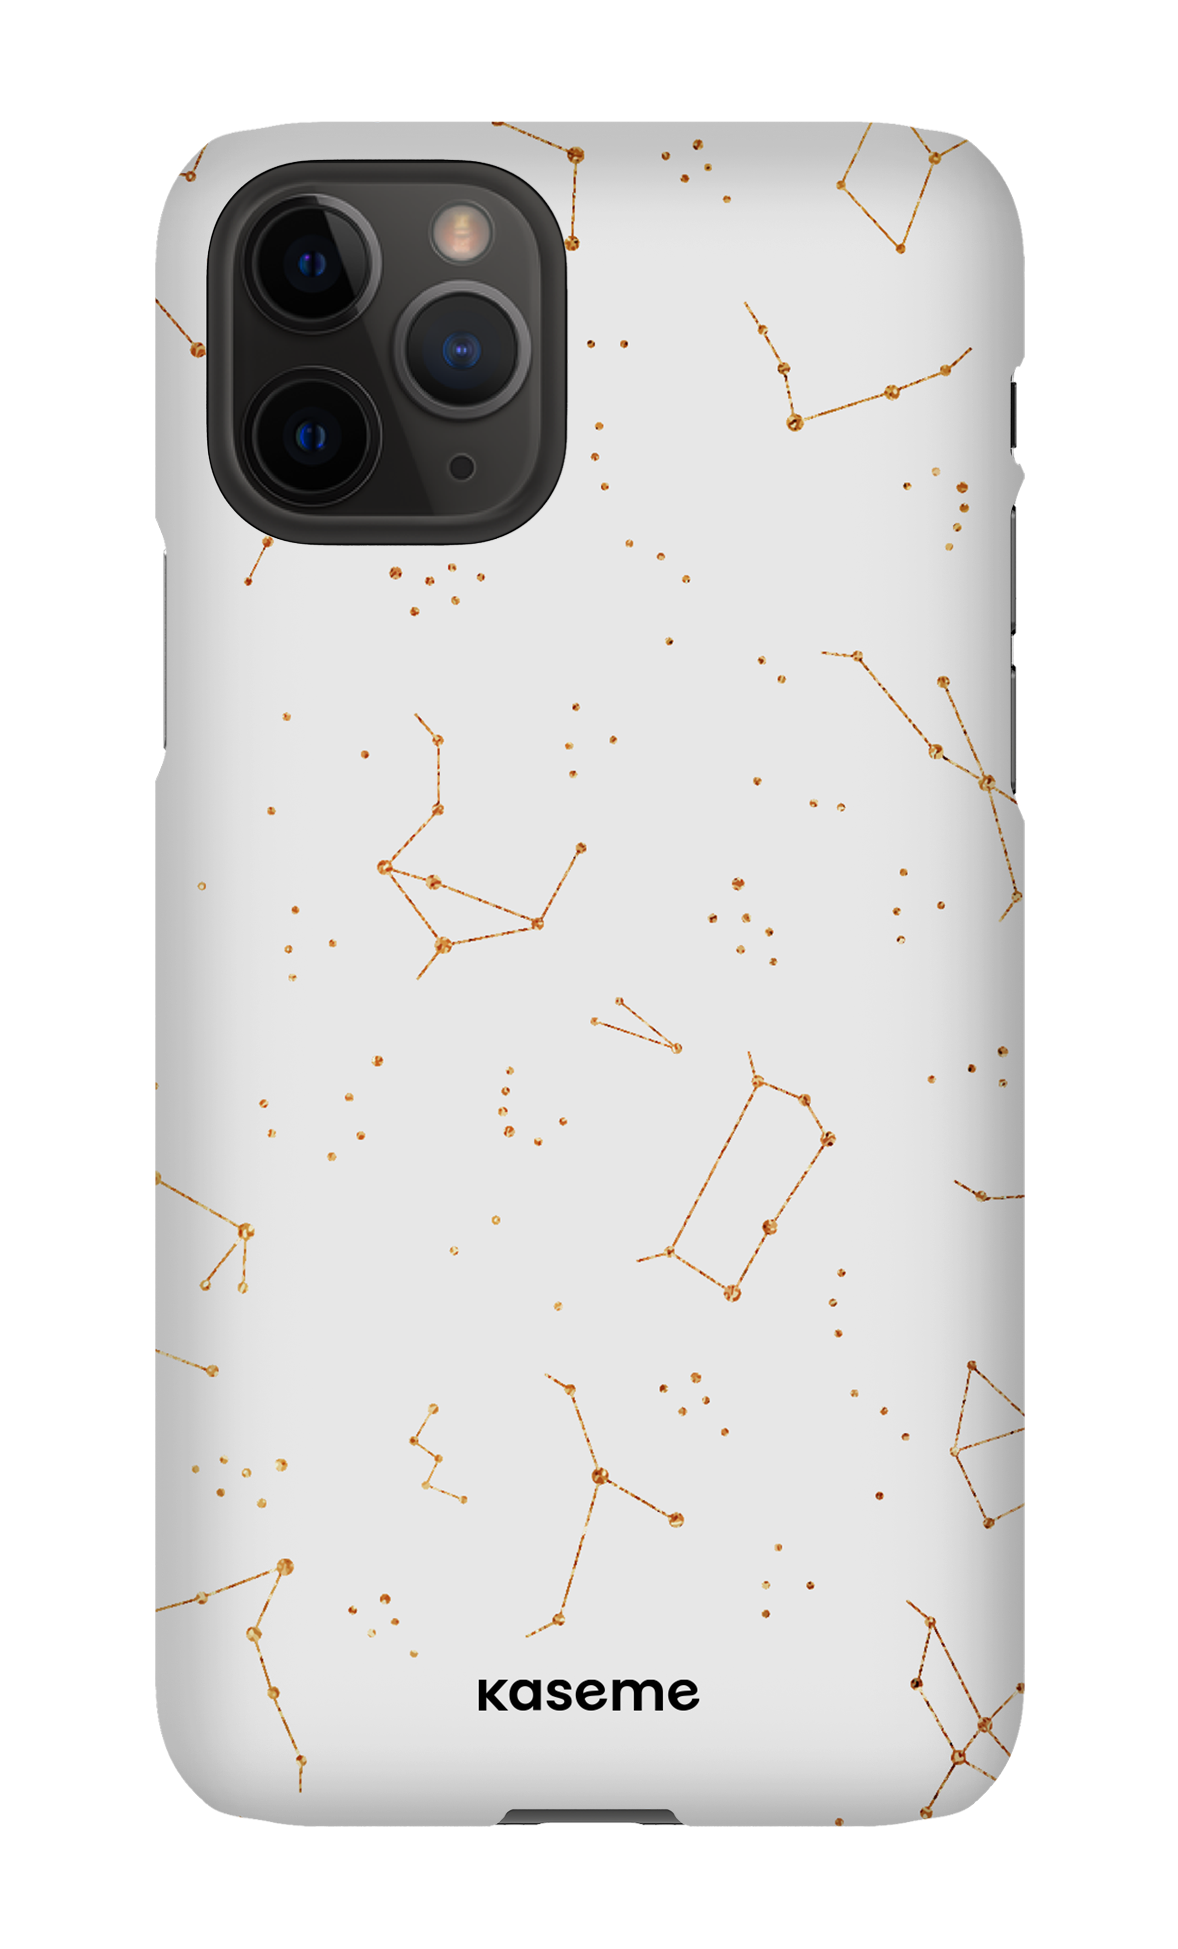 Stardust sky - iPhone 11 Pro